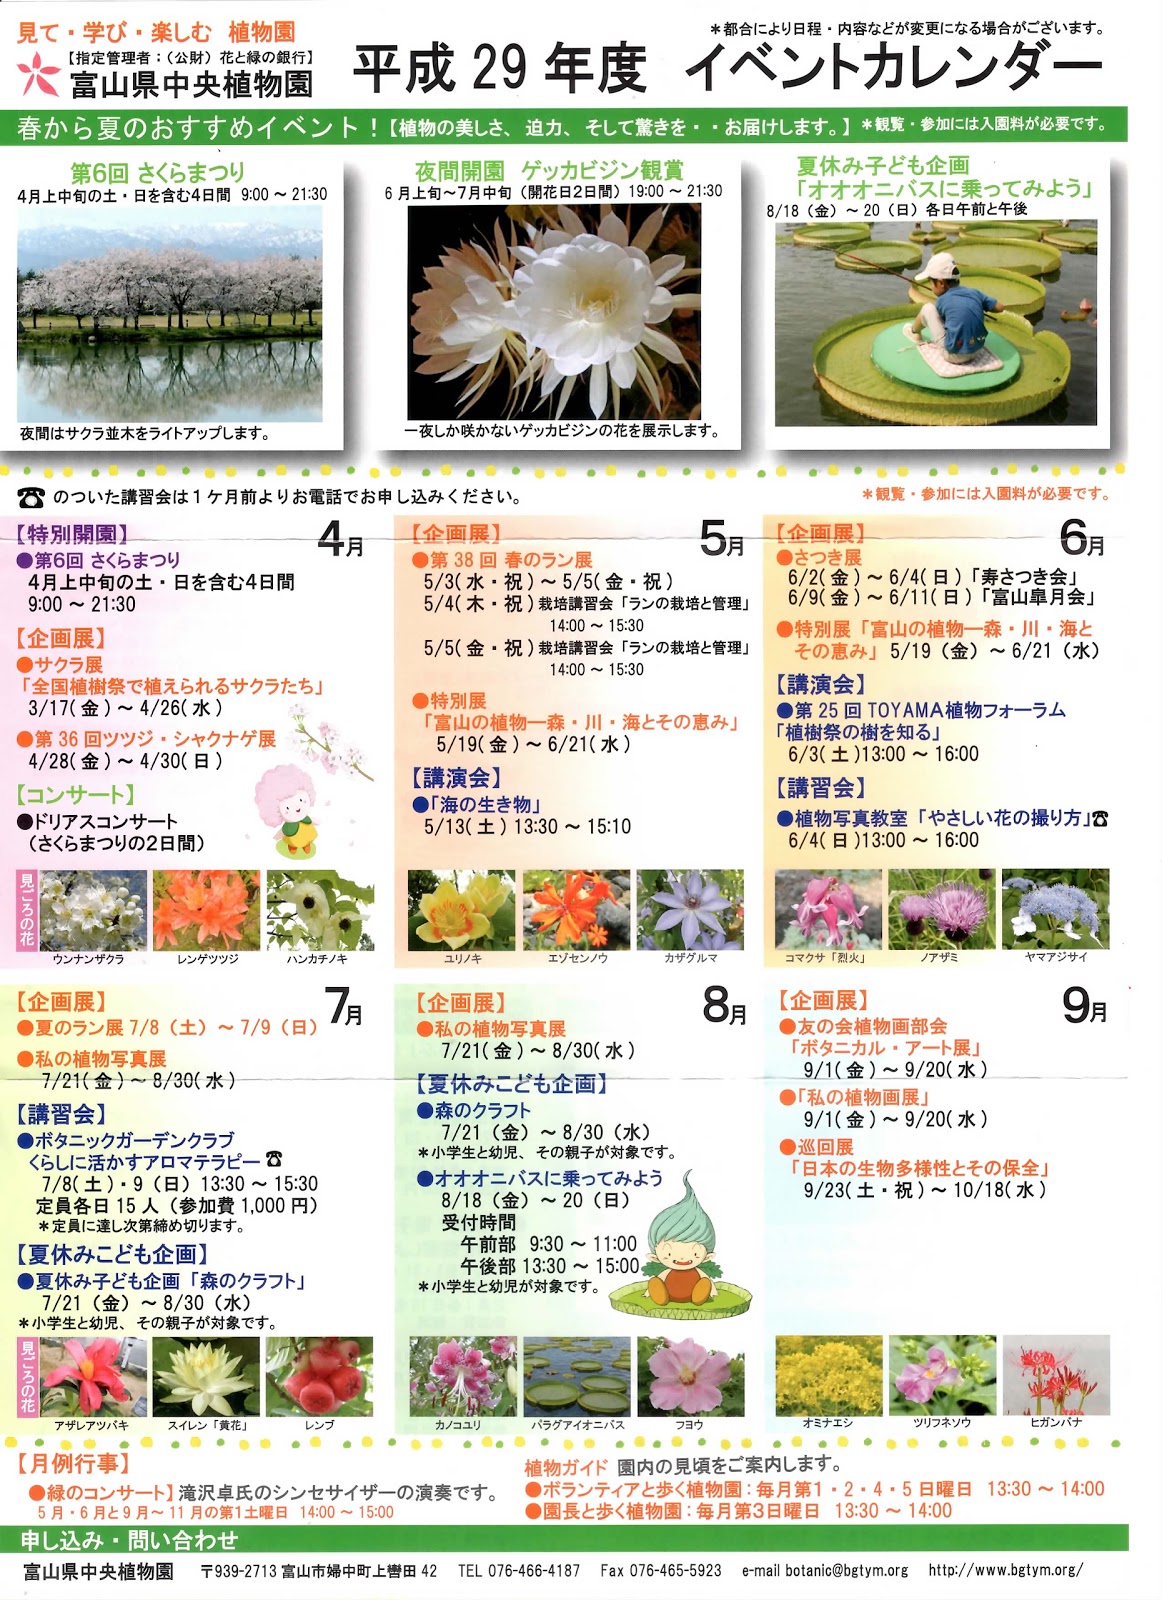 上石瀬自治会 平成29年度 中央植物園イベントカレンダー